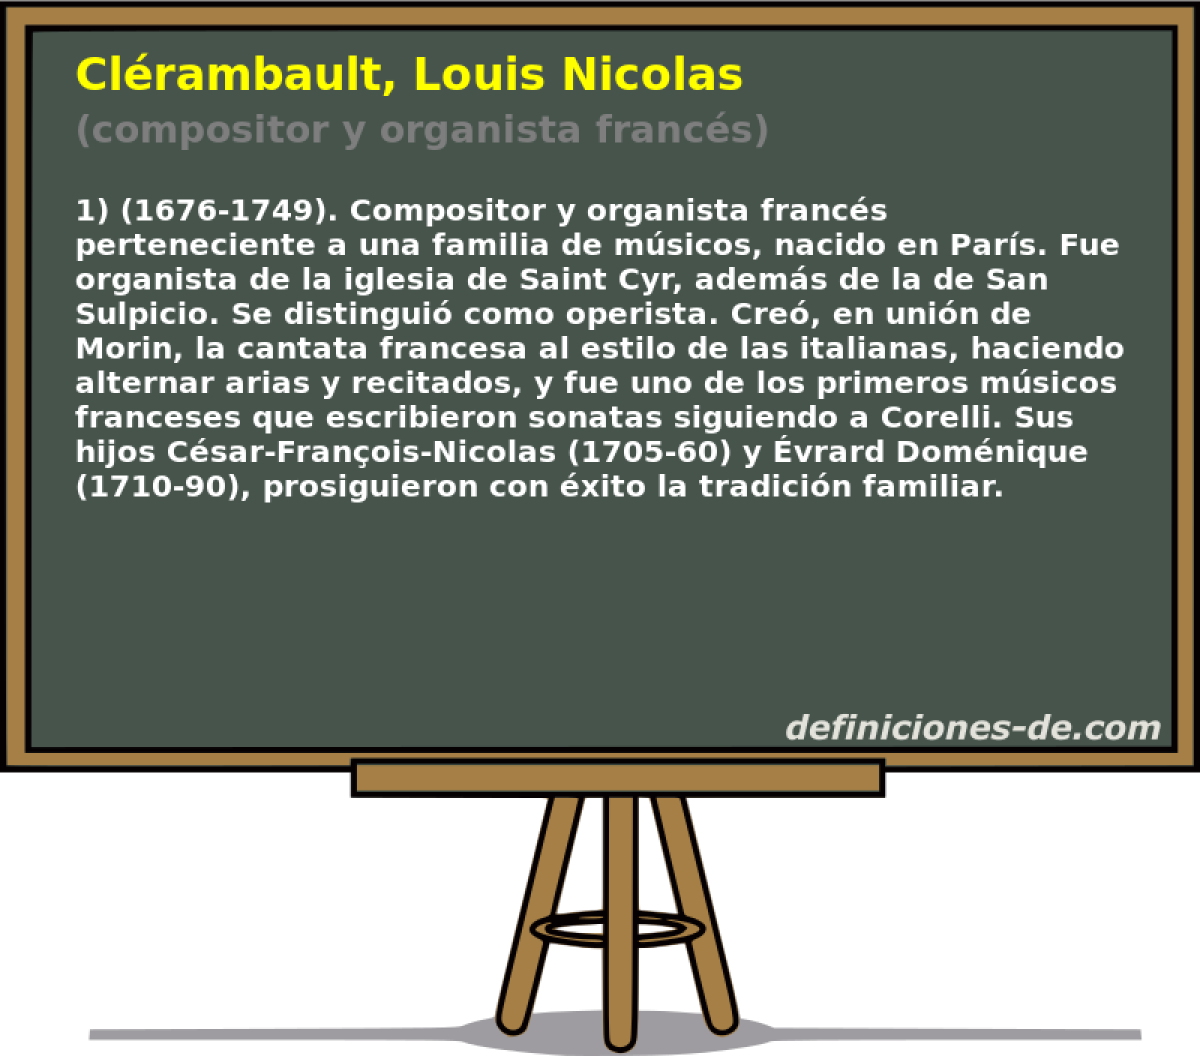 Clrambault, Louis Nicolas (compositor y organista francs)